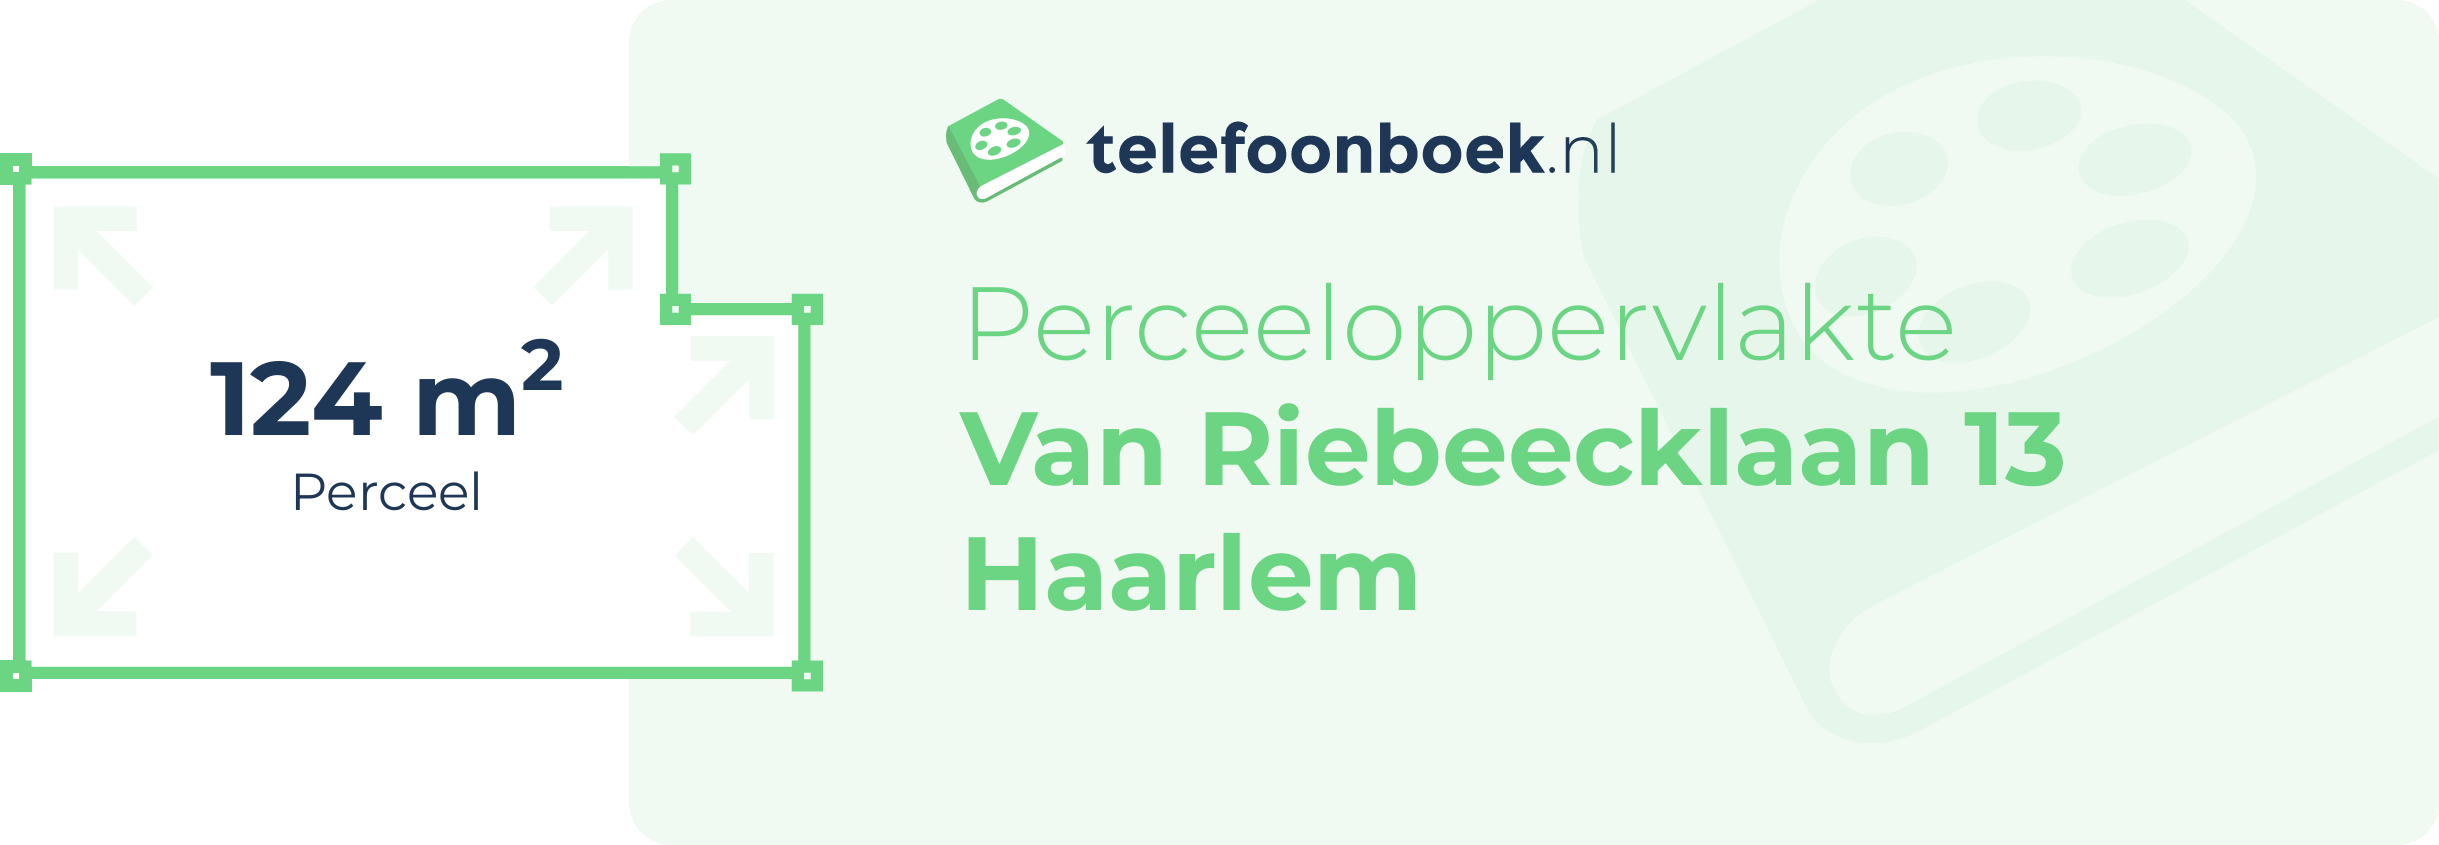 Perceeloppervlakte Van Riebeecklaan 13 Haarlem